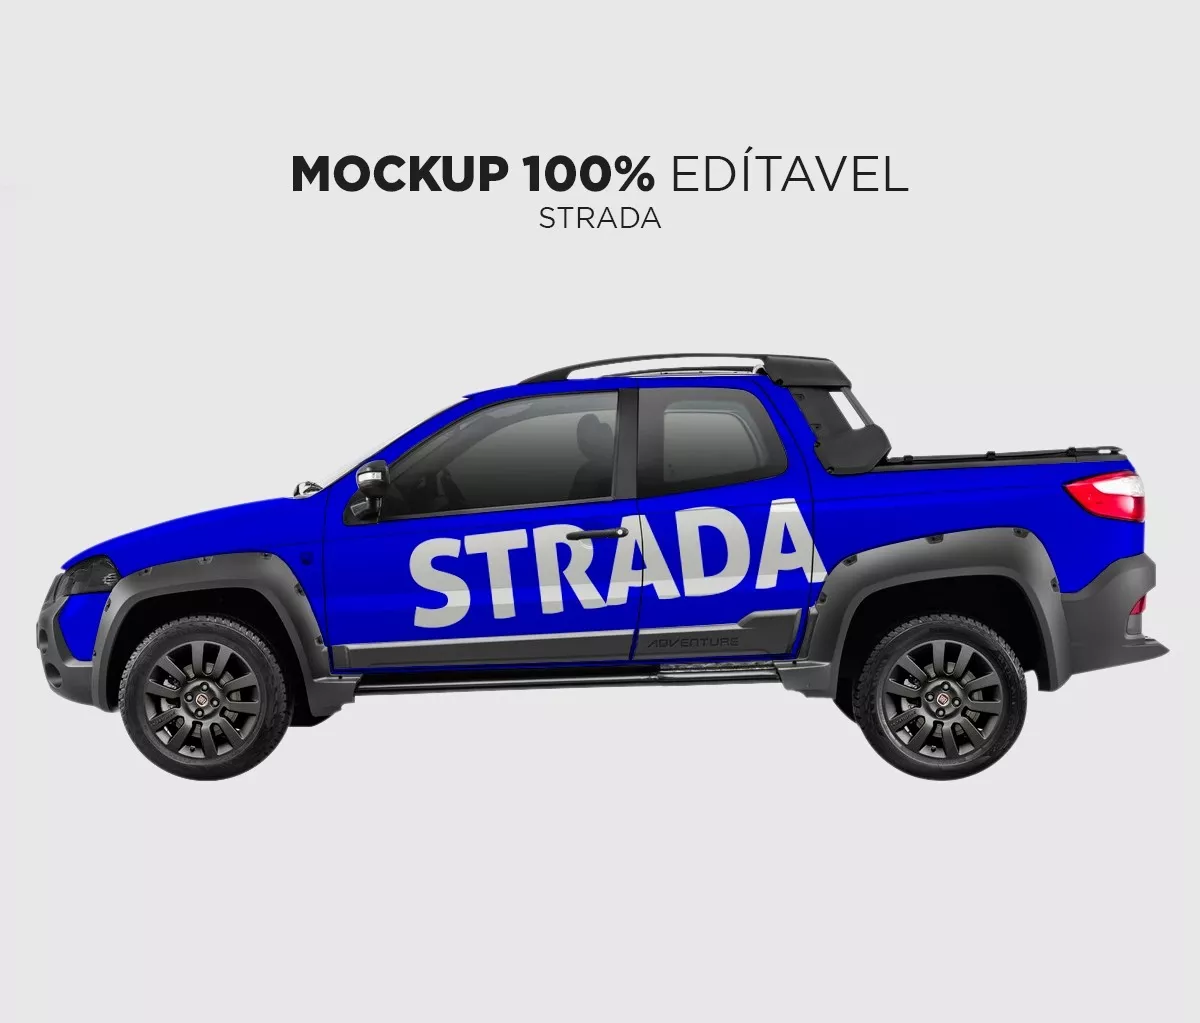 Mockup Vários Carros Psd - 100% Editável.